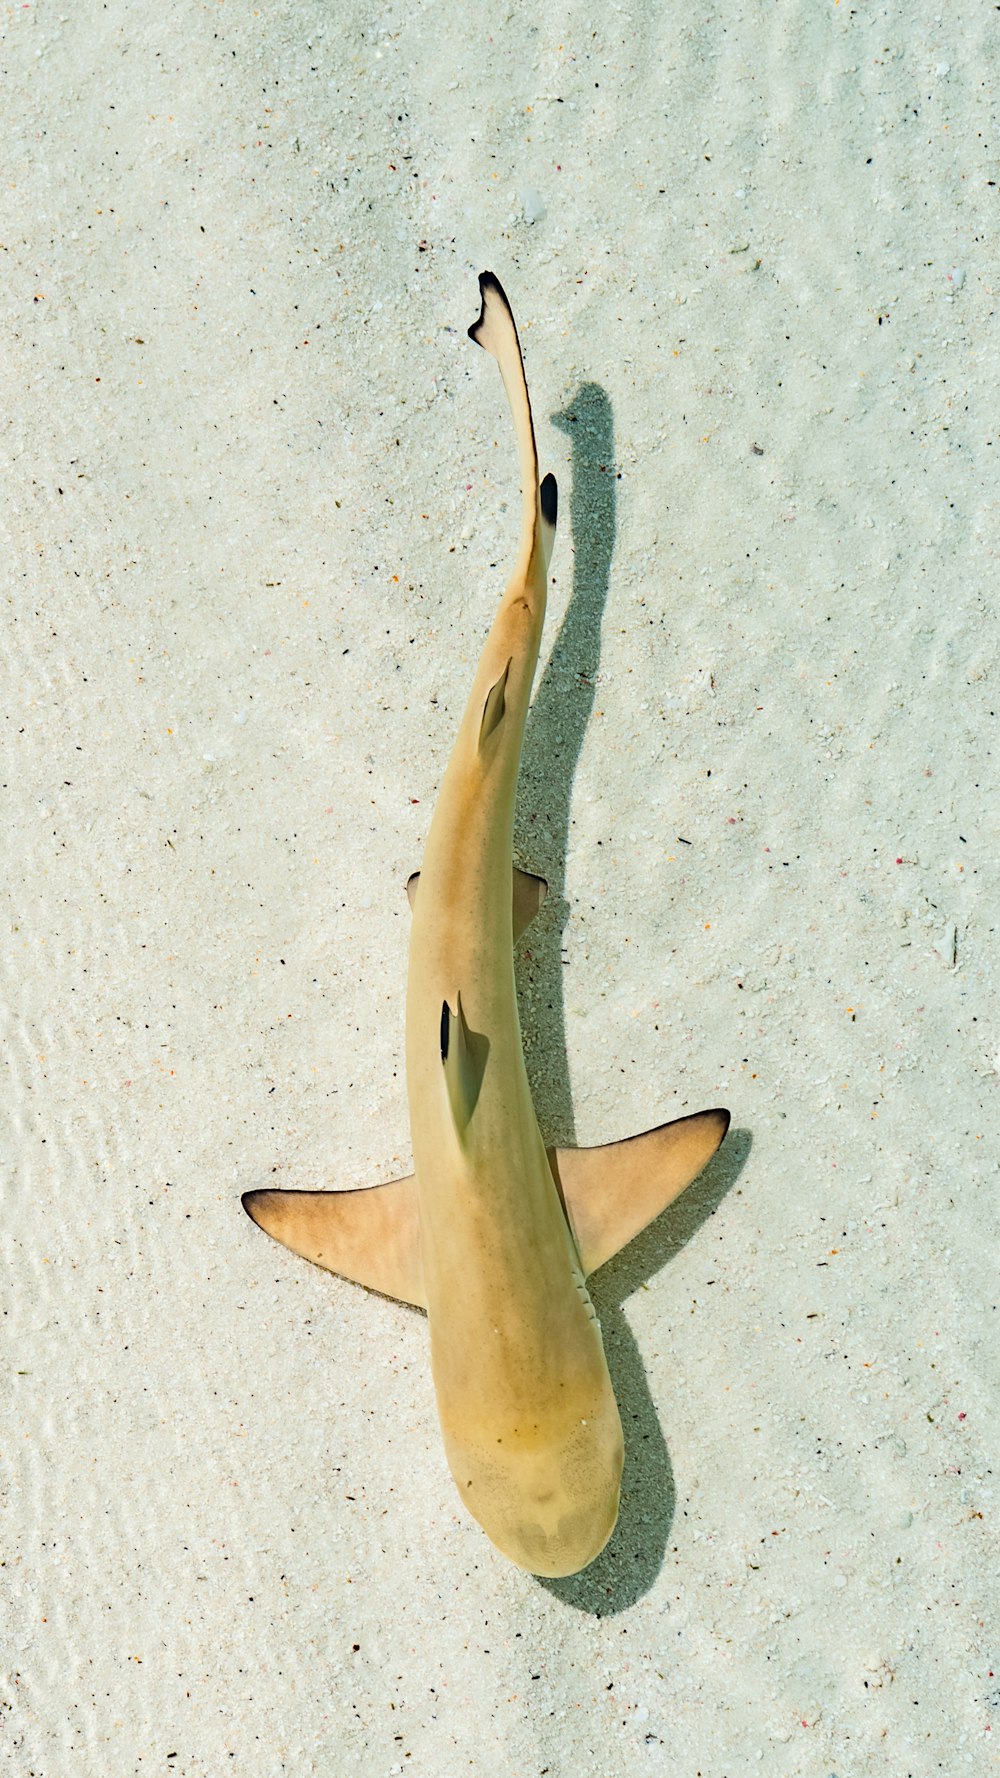 coda di squalo bianca e nera